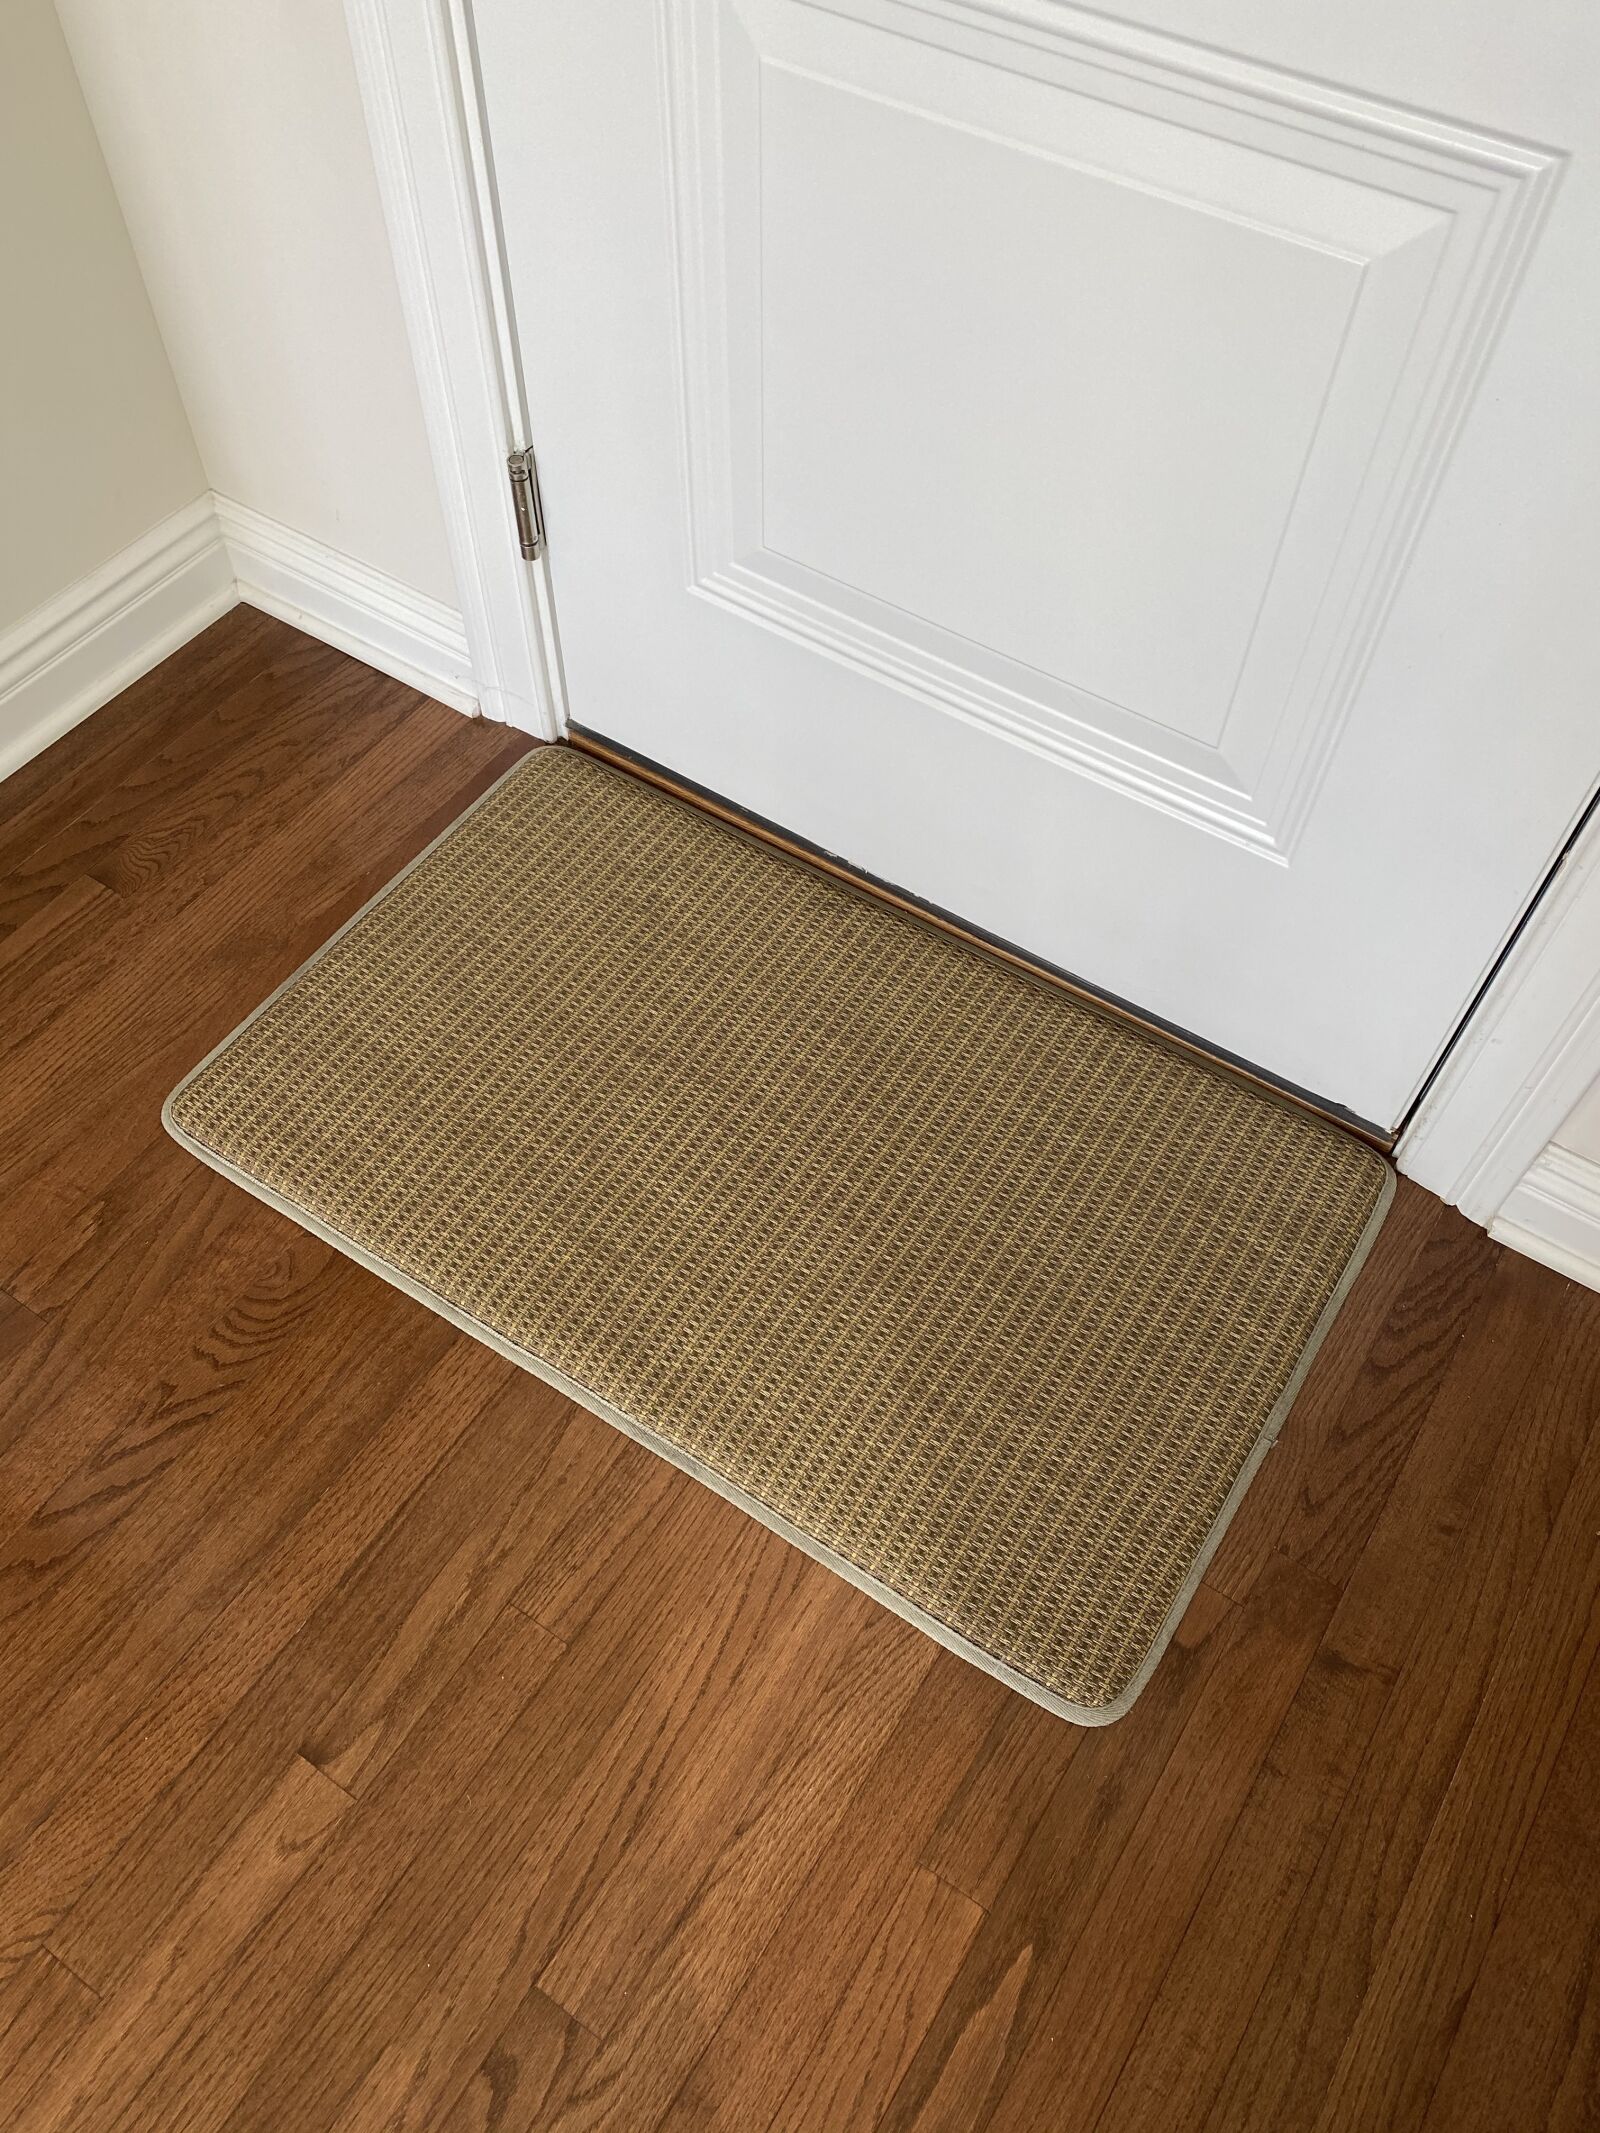 Apple iPhone 11 sample photo. Floor, mat, doorway photography